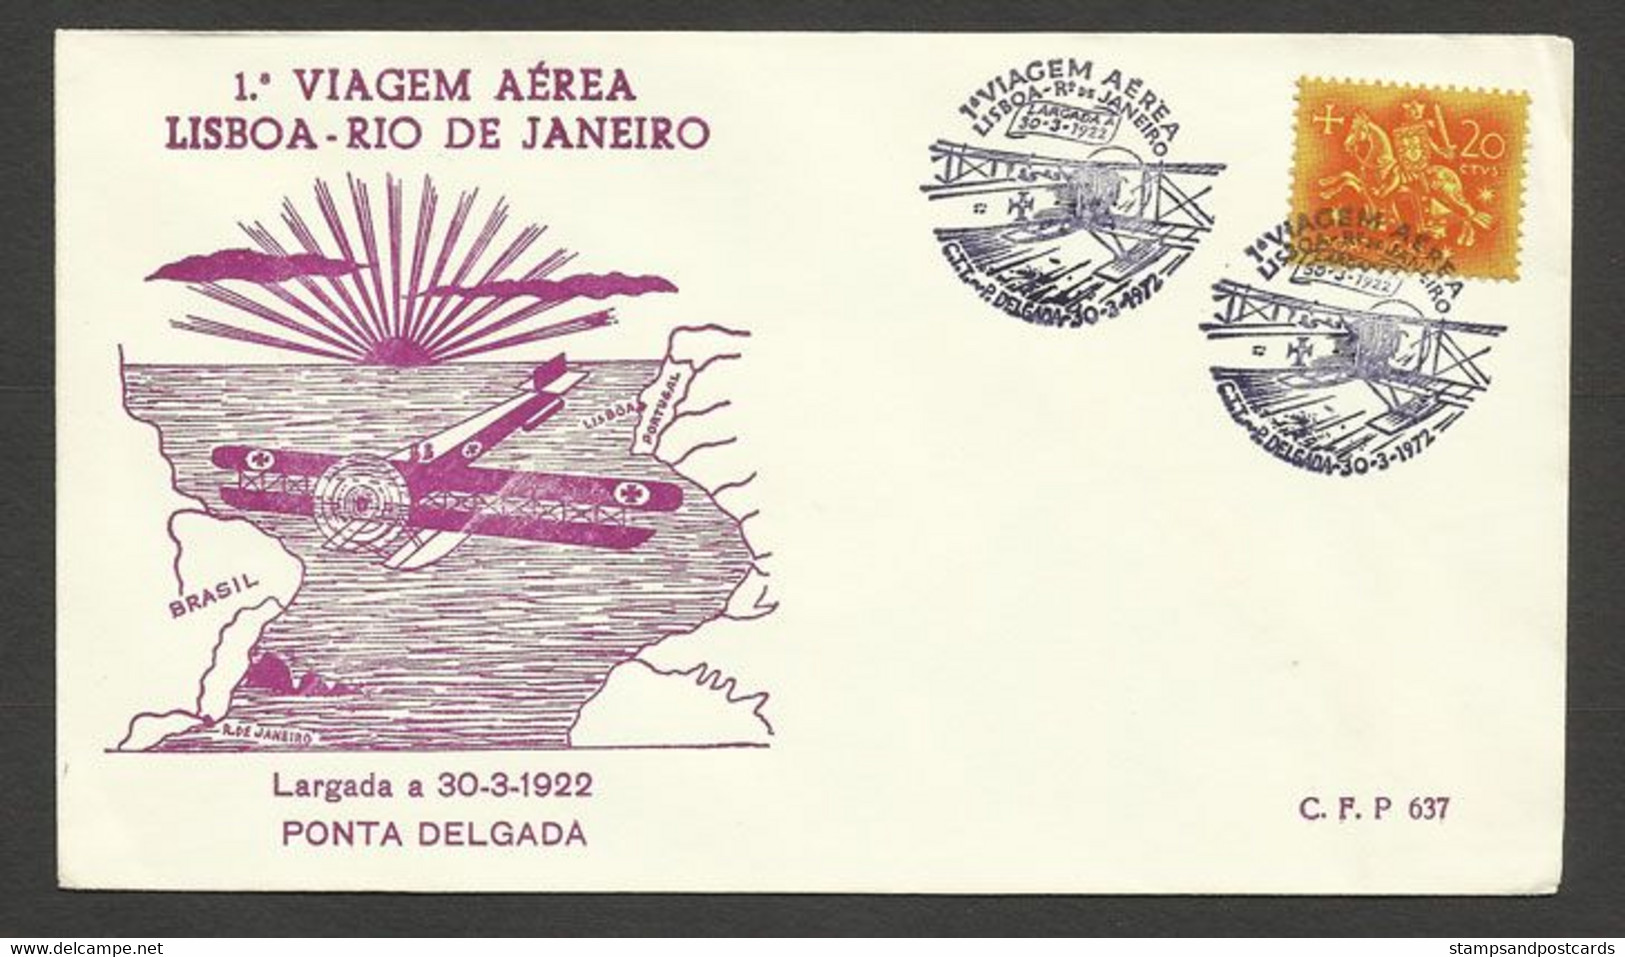 Portugal 50 Ans 1º Traversée Par Avion Atlantique Sud Gago Coutinho Cachet Commemoratif Ponta Delgada Açores Azores 1972 - Postal Logo & Postmarks